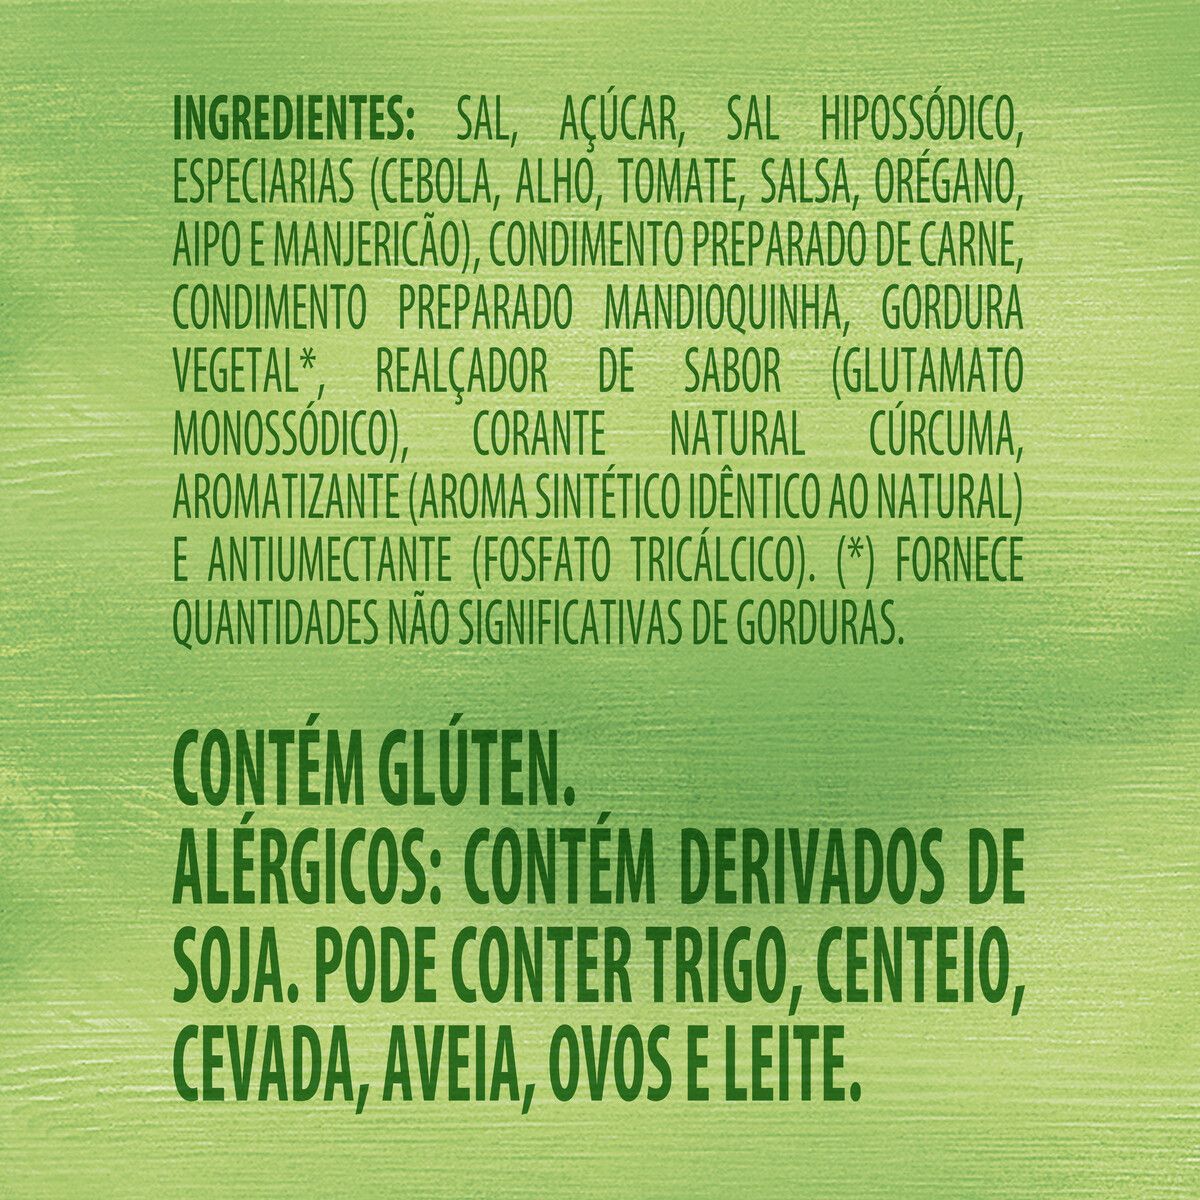 Caldo em Pó Legumes Knorr Caixa 35g 5 Unidades image number 5